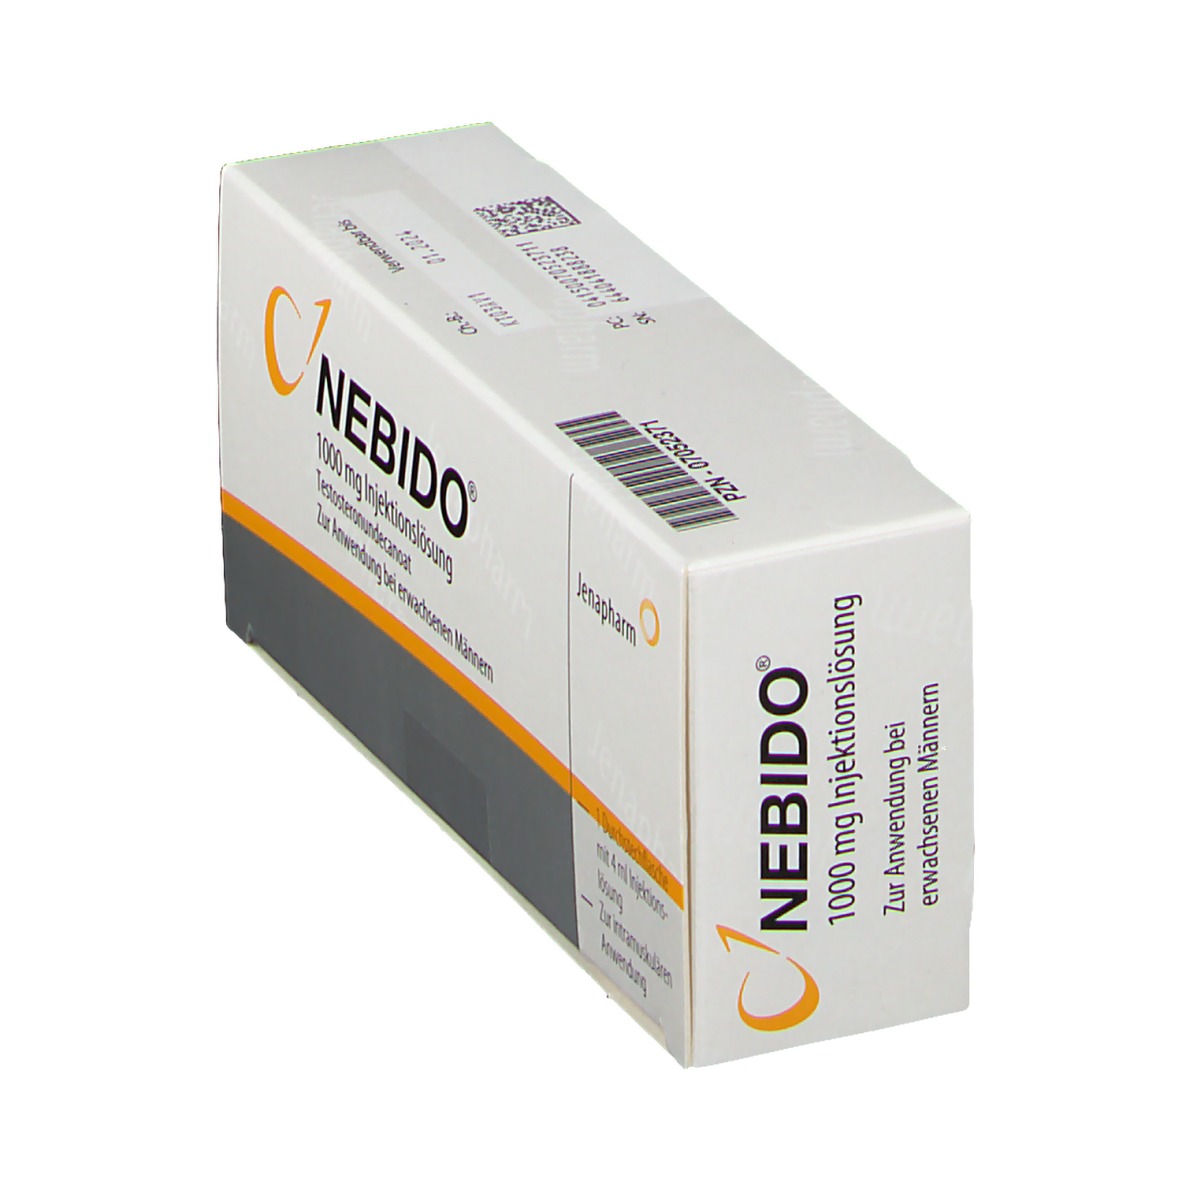 Wie wird Nebido verwendet?